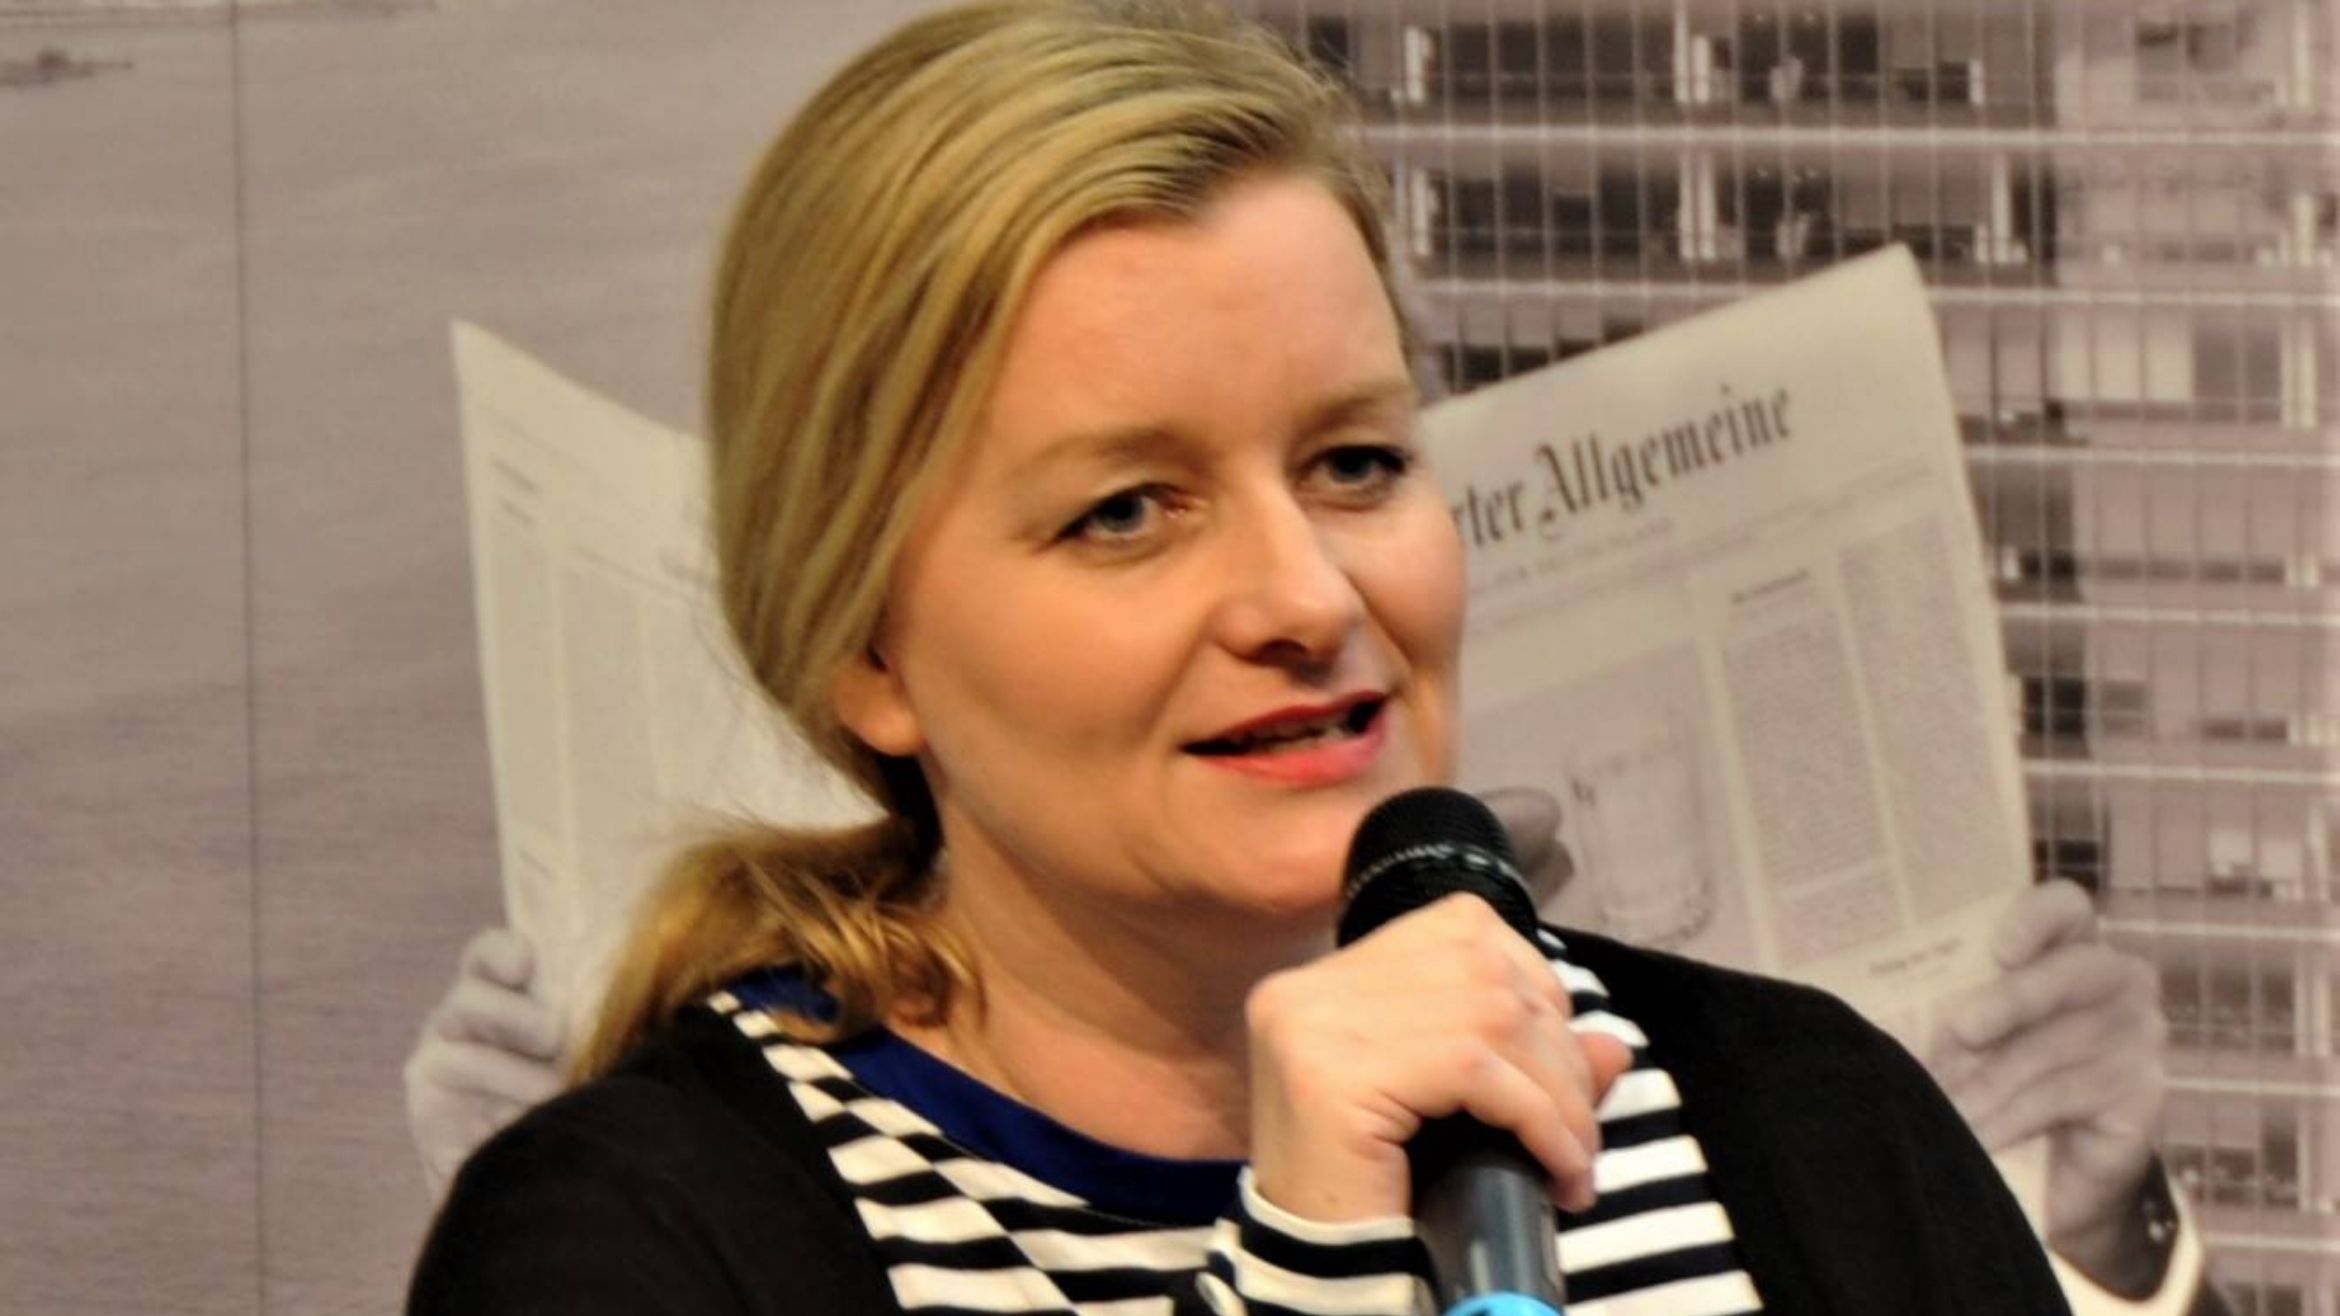 Julia Encke auf der Leipziger Buchmesse 2019, Foto: Imago Images / Manfred Segerer